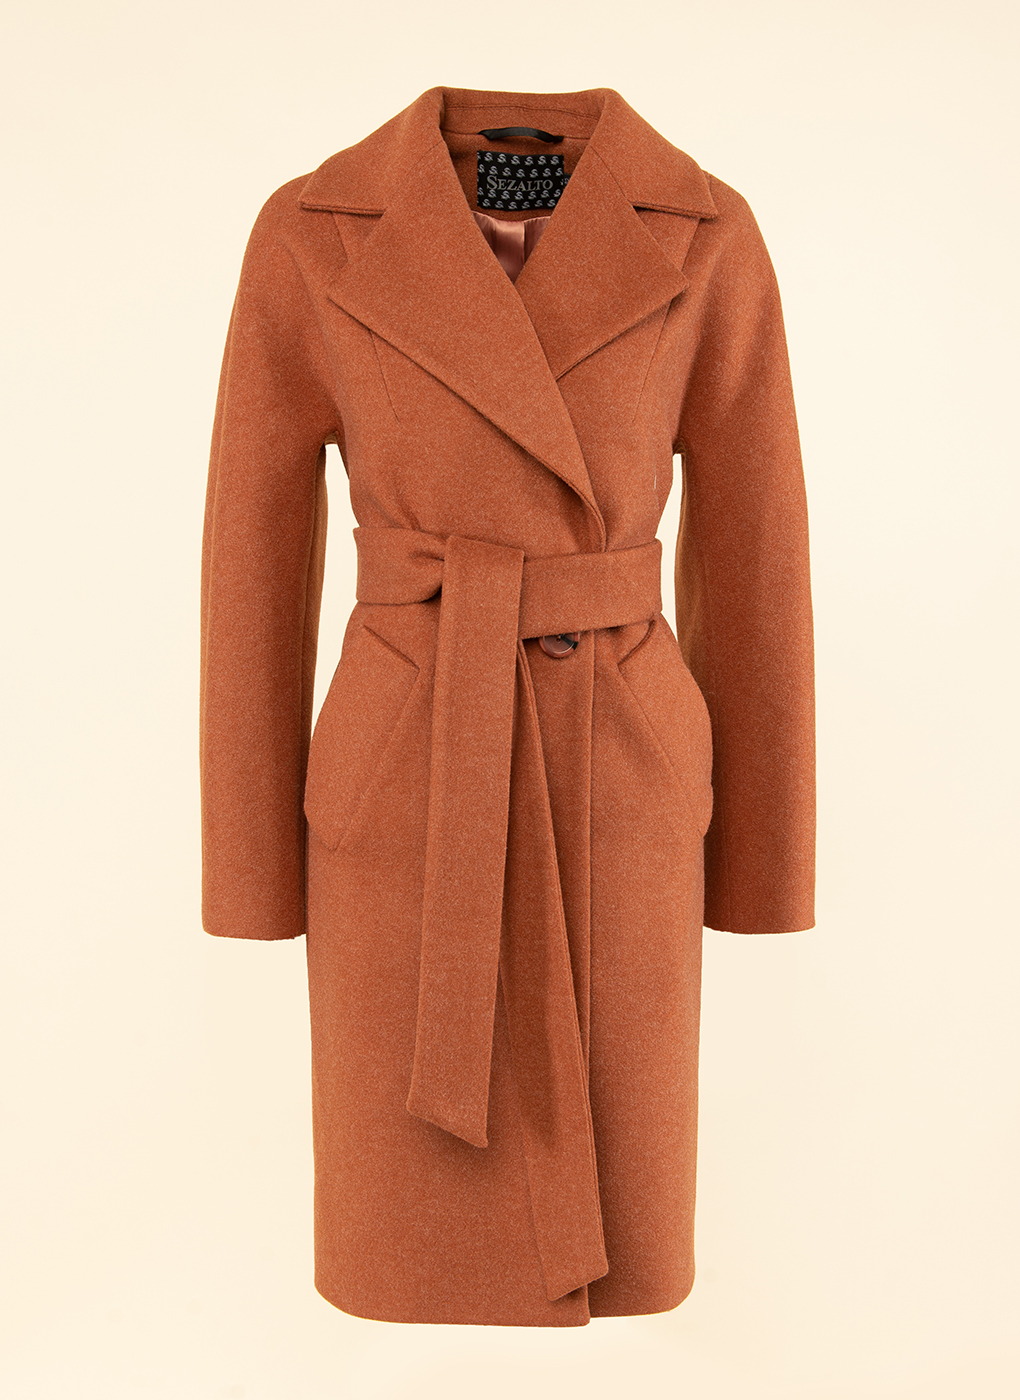 Пальто женское Sezalto 41799 коричневое 40 RU